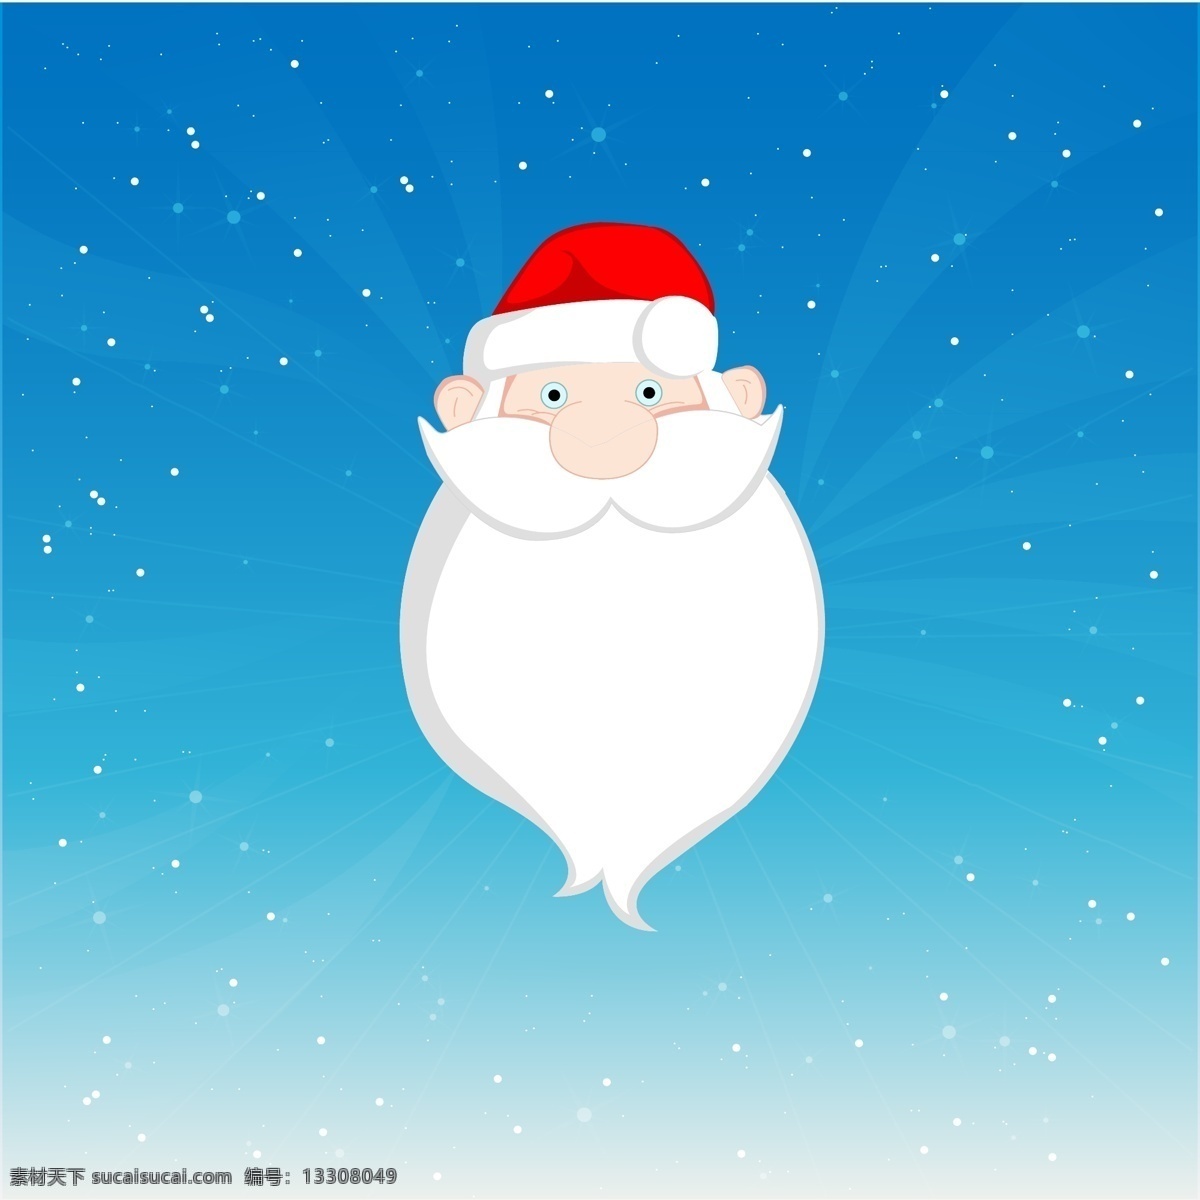 圣诞老人 卡通 精美 矢量 圣诞节 礼物 白胡子 可爱 矢量图片